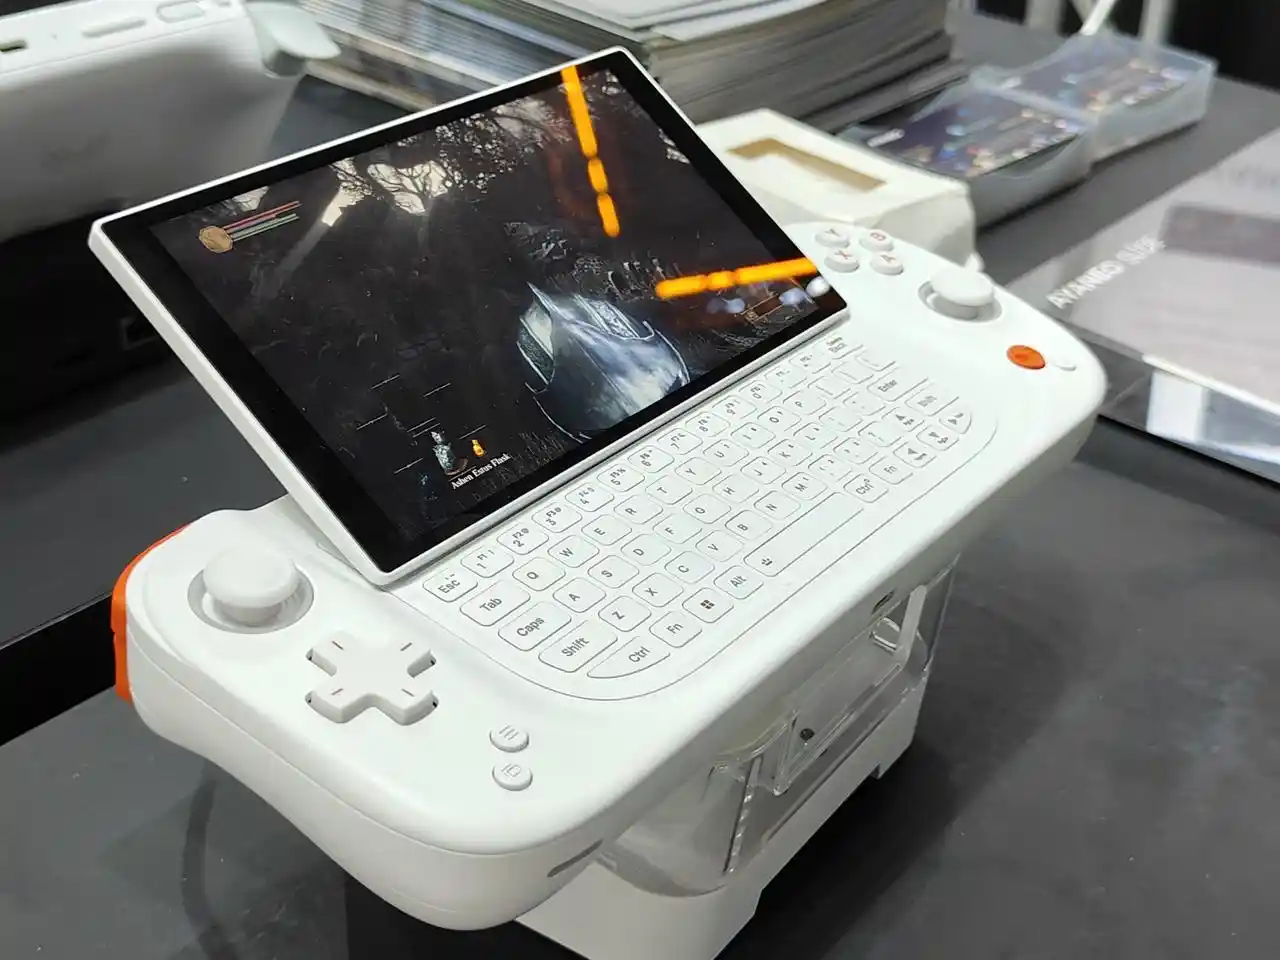 Ayaneo Slide è la nuova console portatile Windows con tastiera che somiglia a PSP GO - caratteristiche, specifiche e immagini